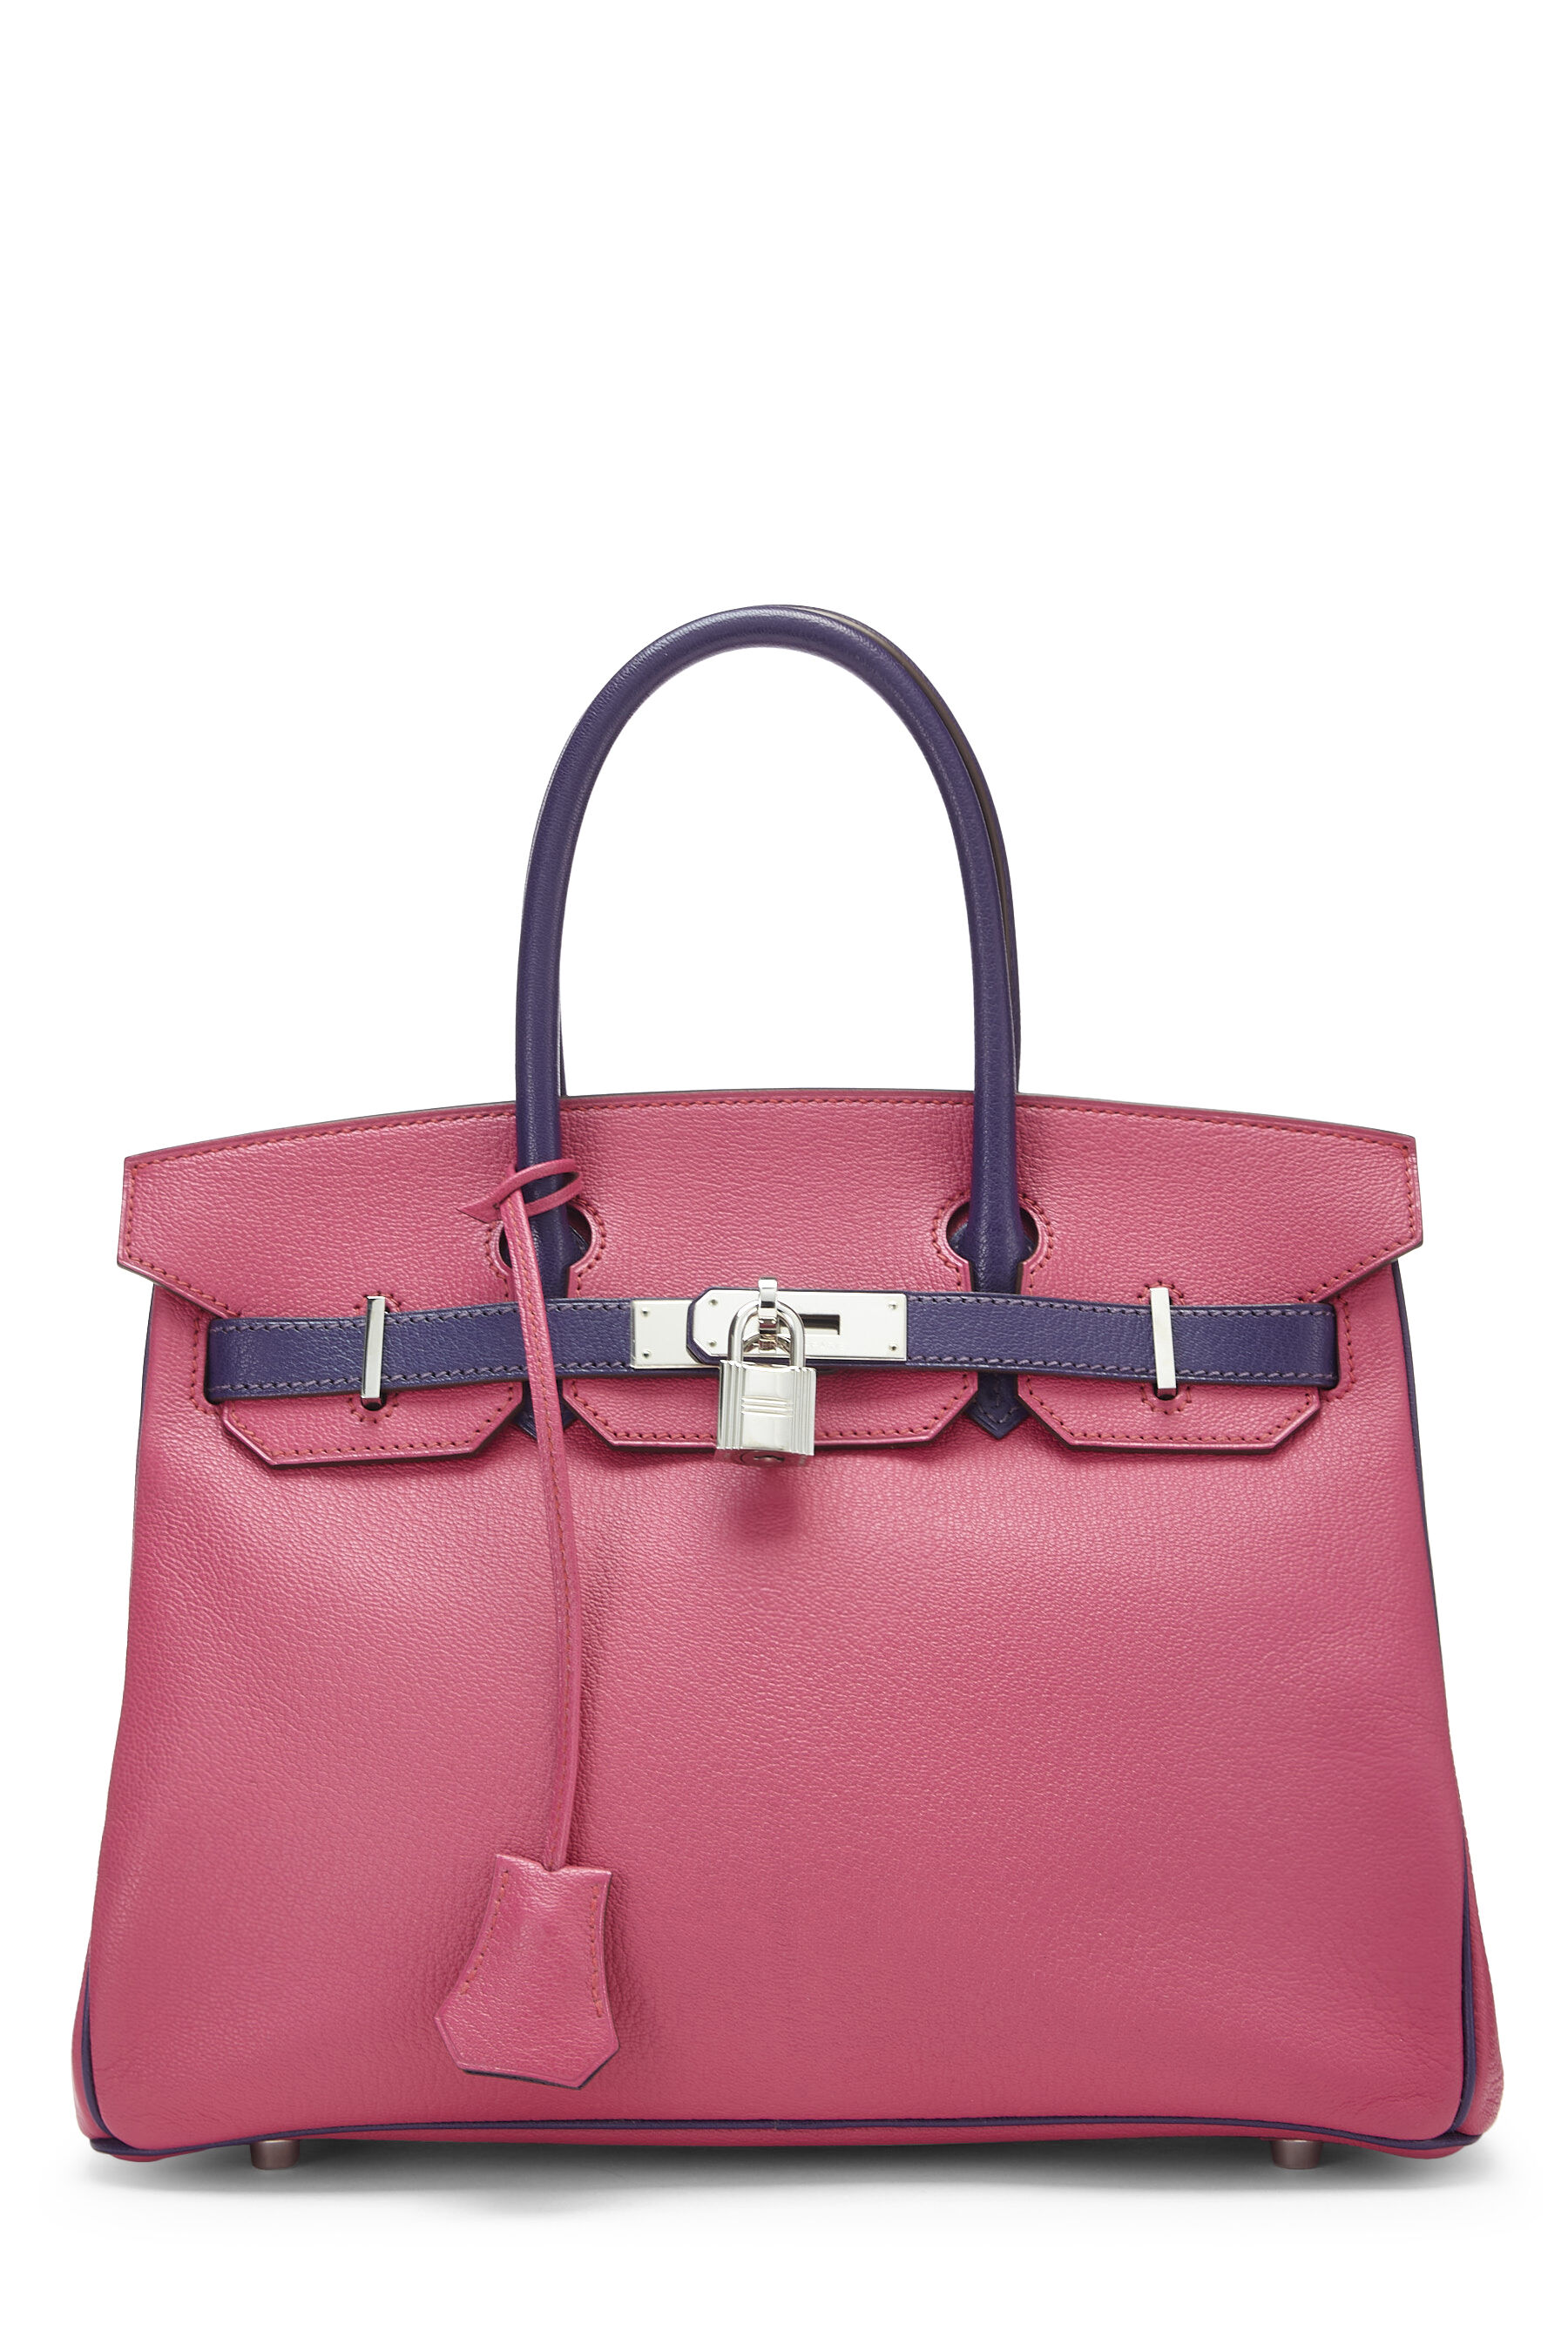 Hermès Grey, Pink Special Order Chevre Mysore Birkin 30 30cm 